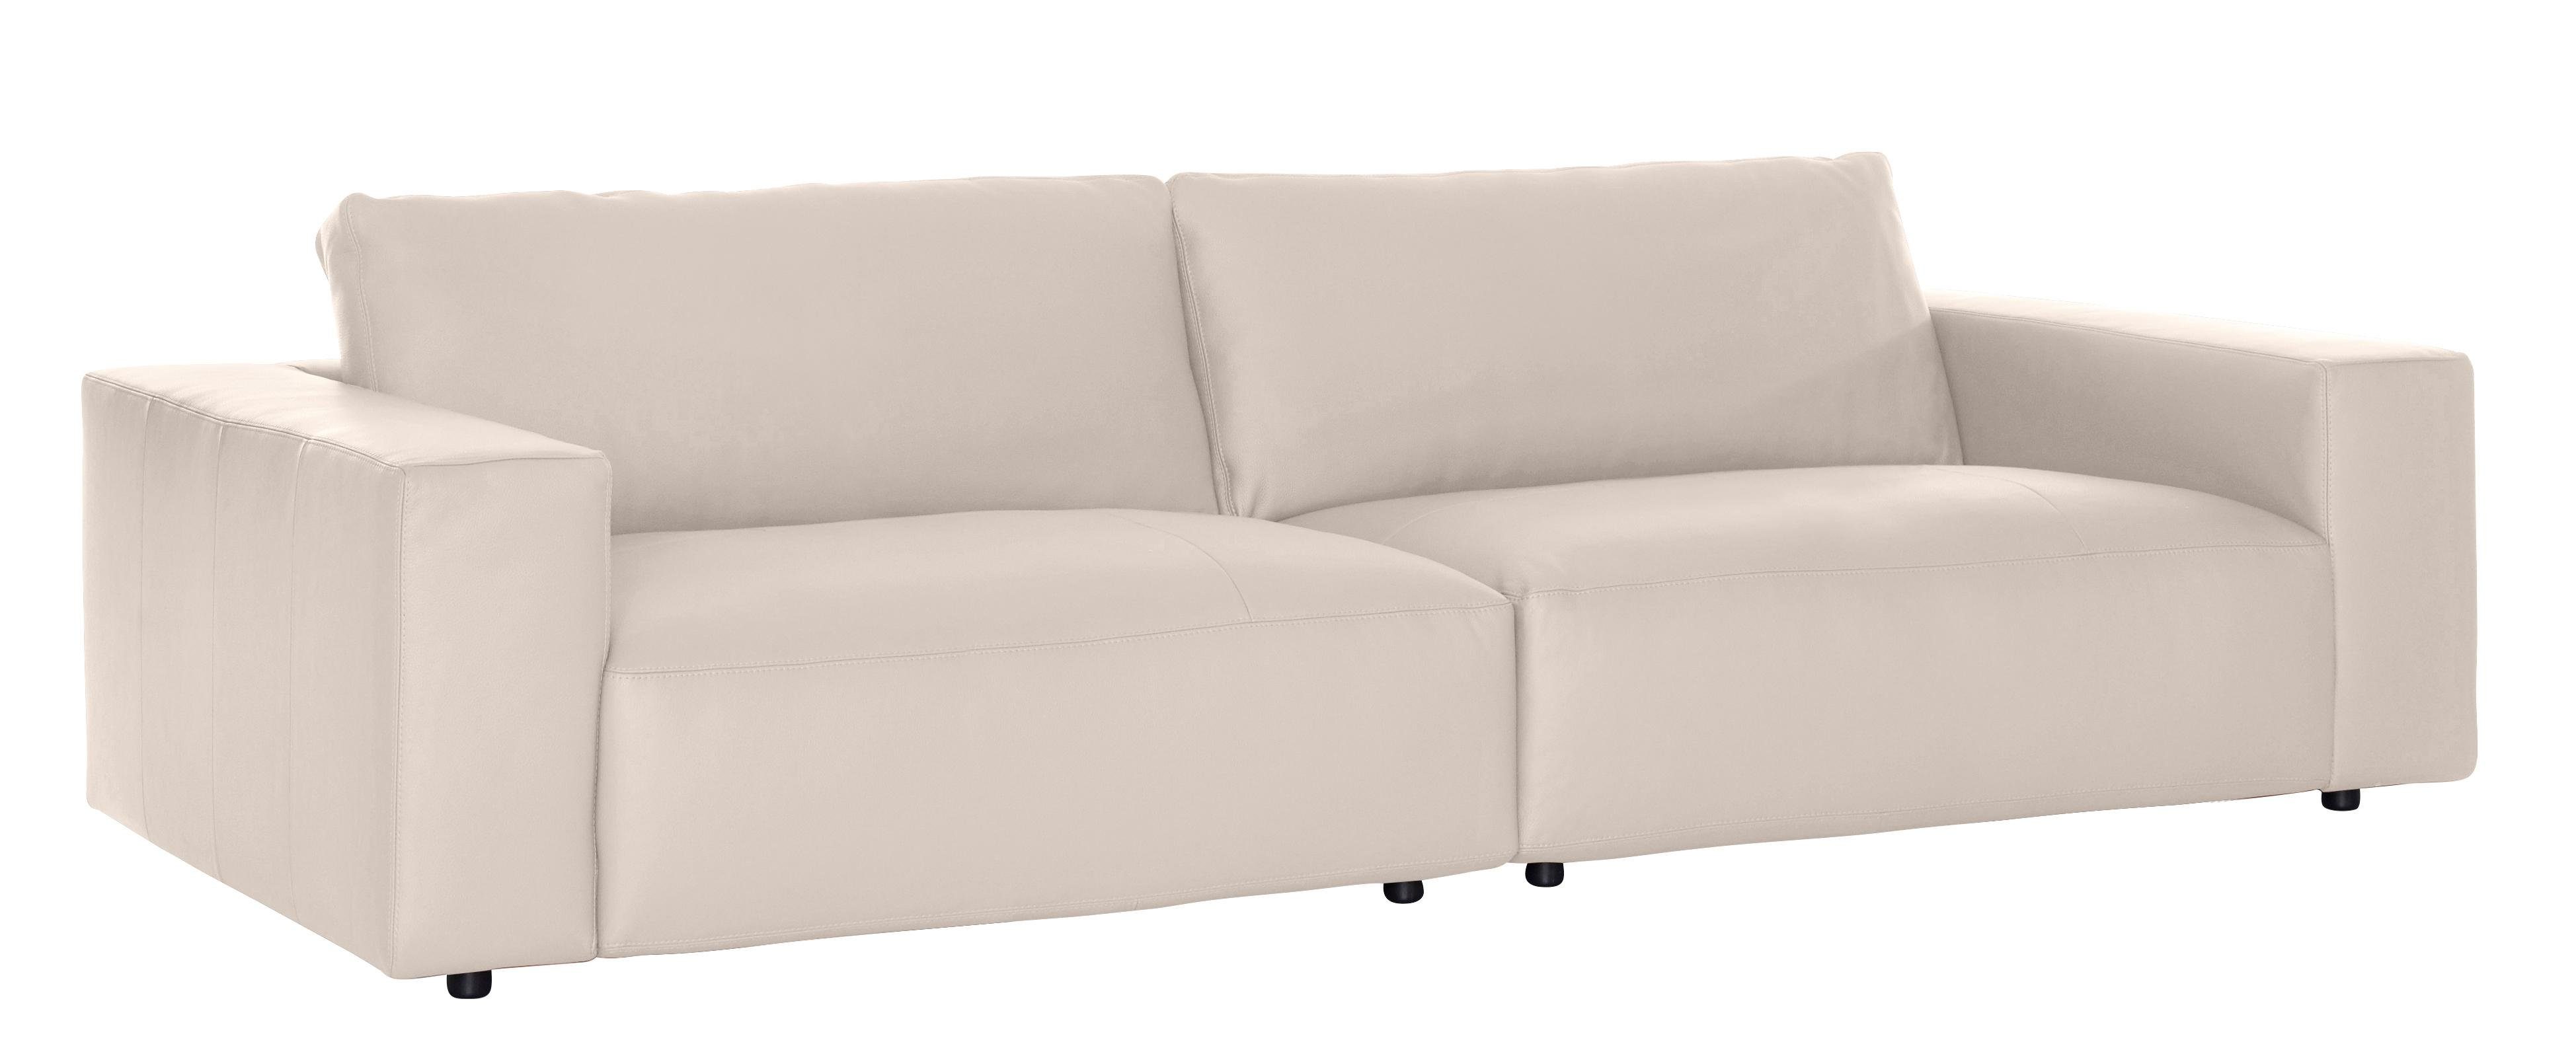 Big-Sofa vielen Qualitäten GALLERY branded und Musterring by in Nähten, 3-Sitzer M unterschiedlichen 4 LUCIA,